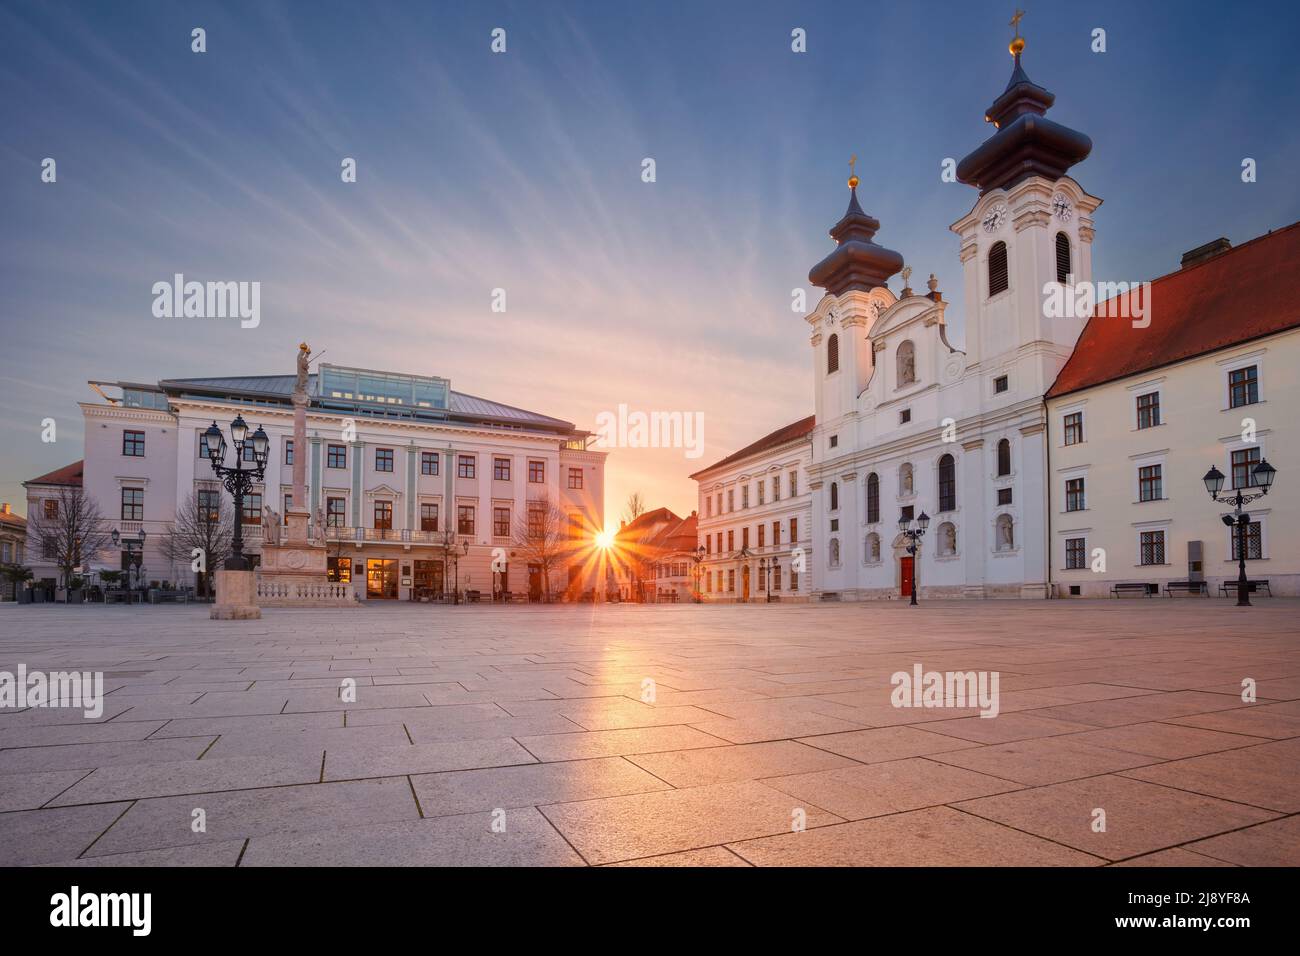 Gyor, Hungary. Cityscape image of downtown Gyor, Hungary with Szechenyi Square at sunrise. Stock Photo